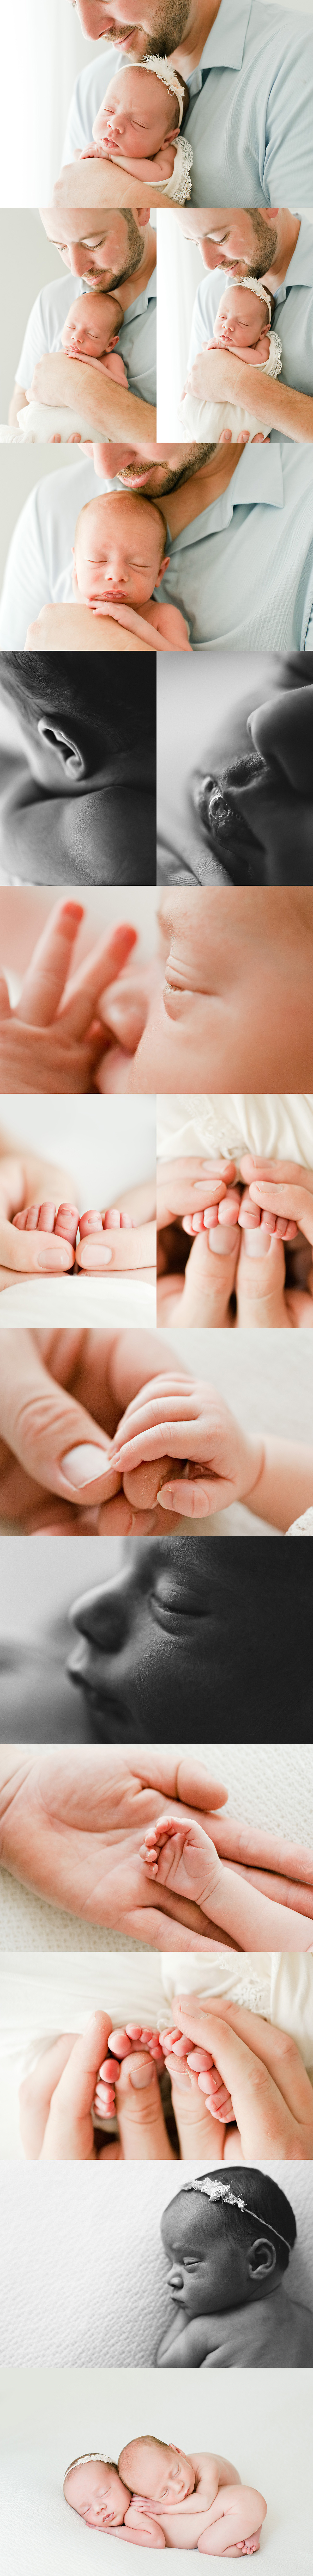 newborn twins details tiny toes